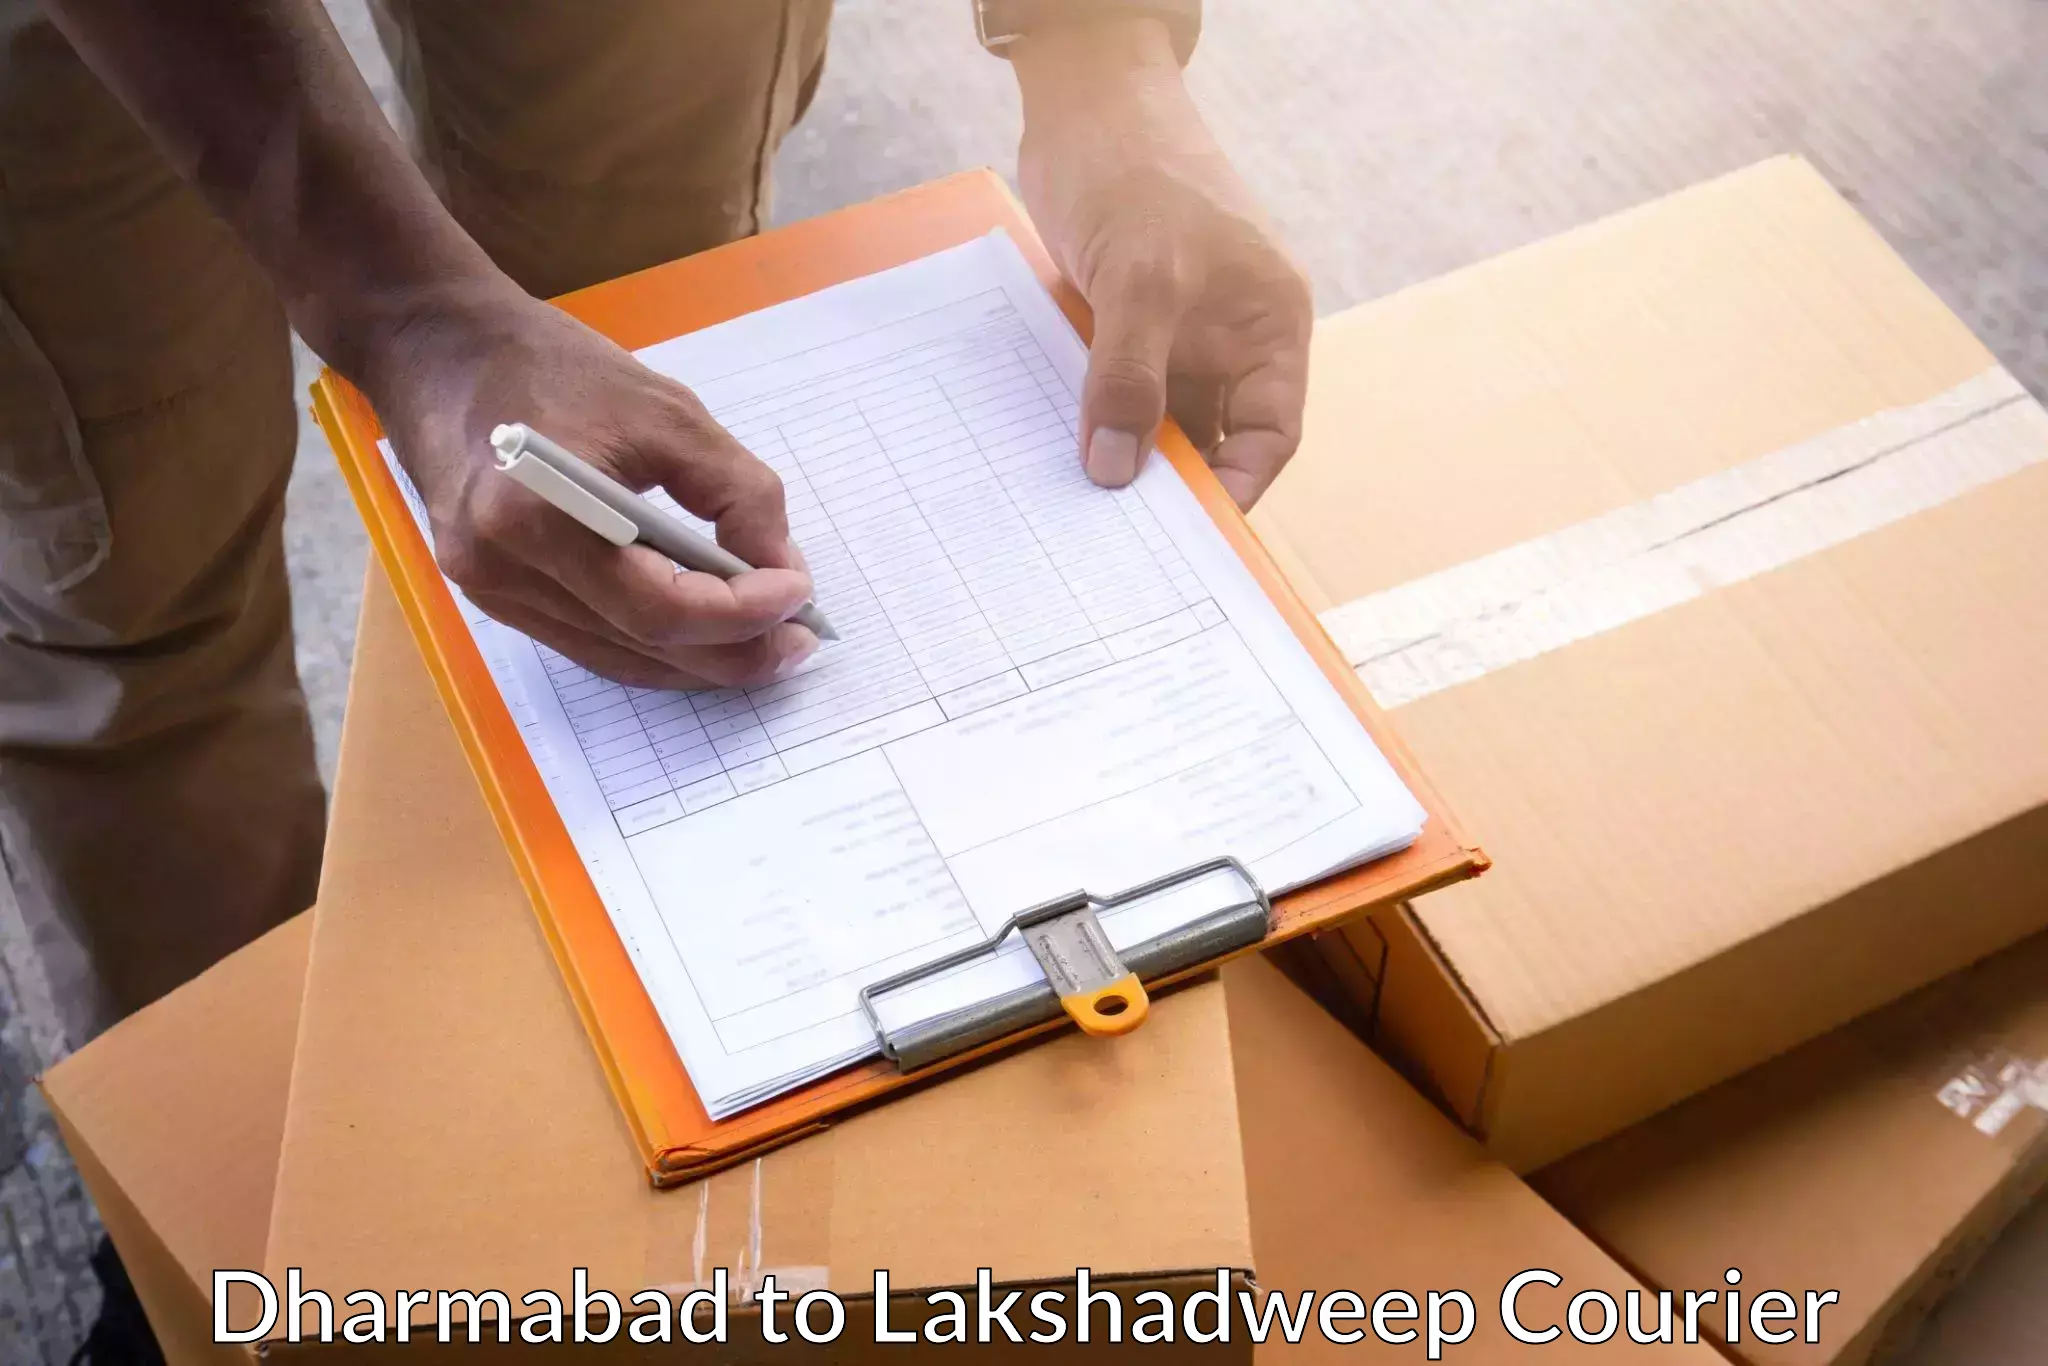 Digital courier platforms Dharmabad to Lakshadweep